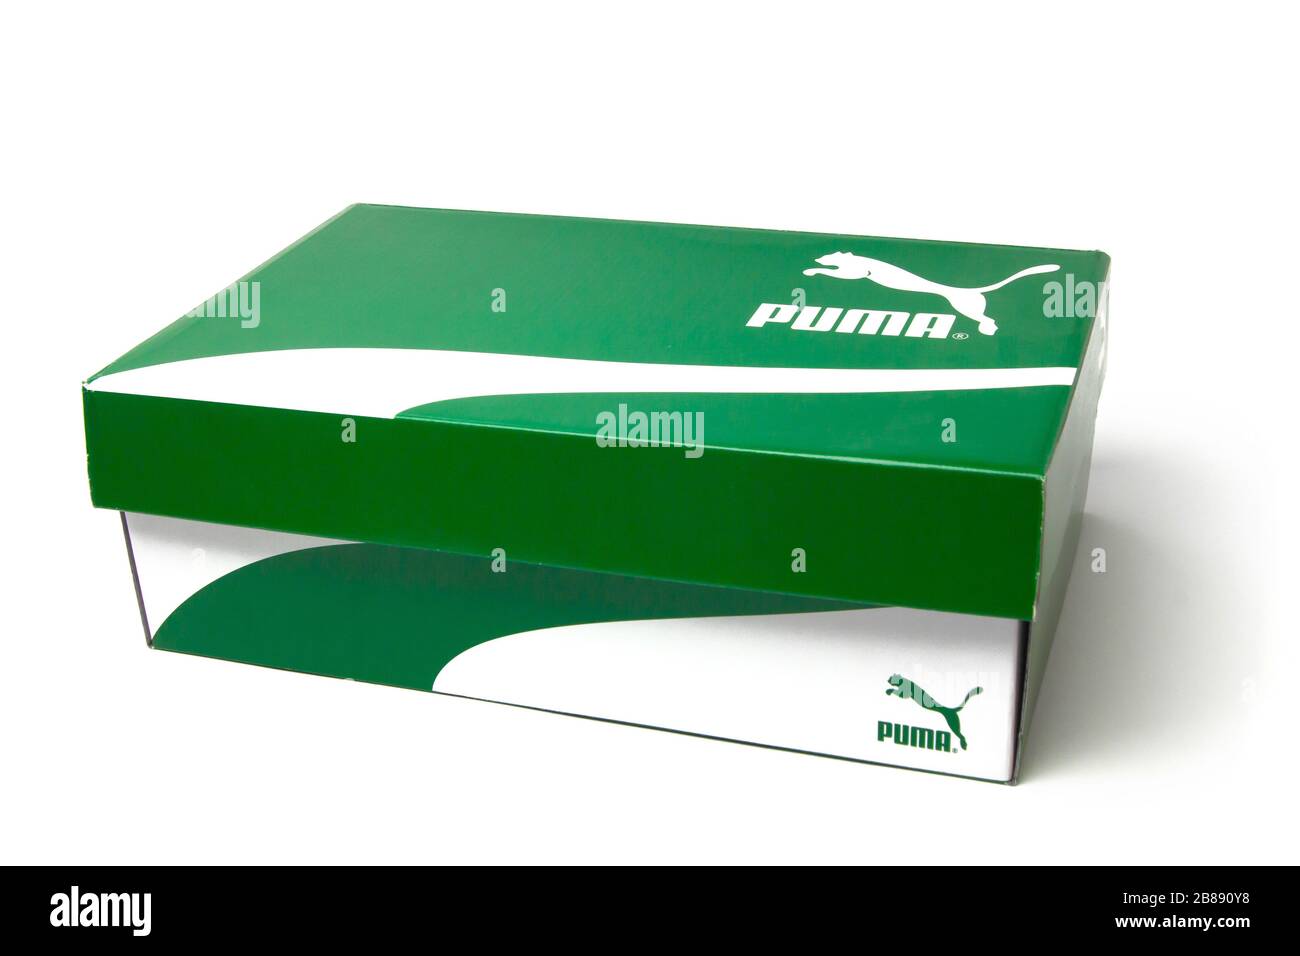 La scatola delle scarpe Puma è isolata su sfondo bianco. Scatola verde con strisce bianche per gli snickers. San Francisco, USA, marzo 2020. Foto Stock